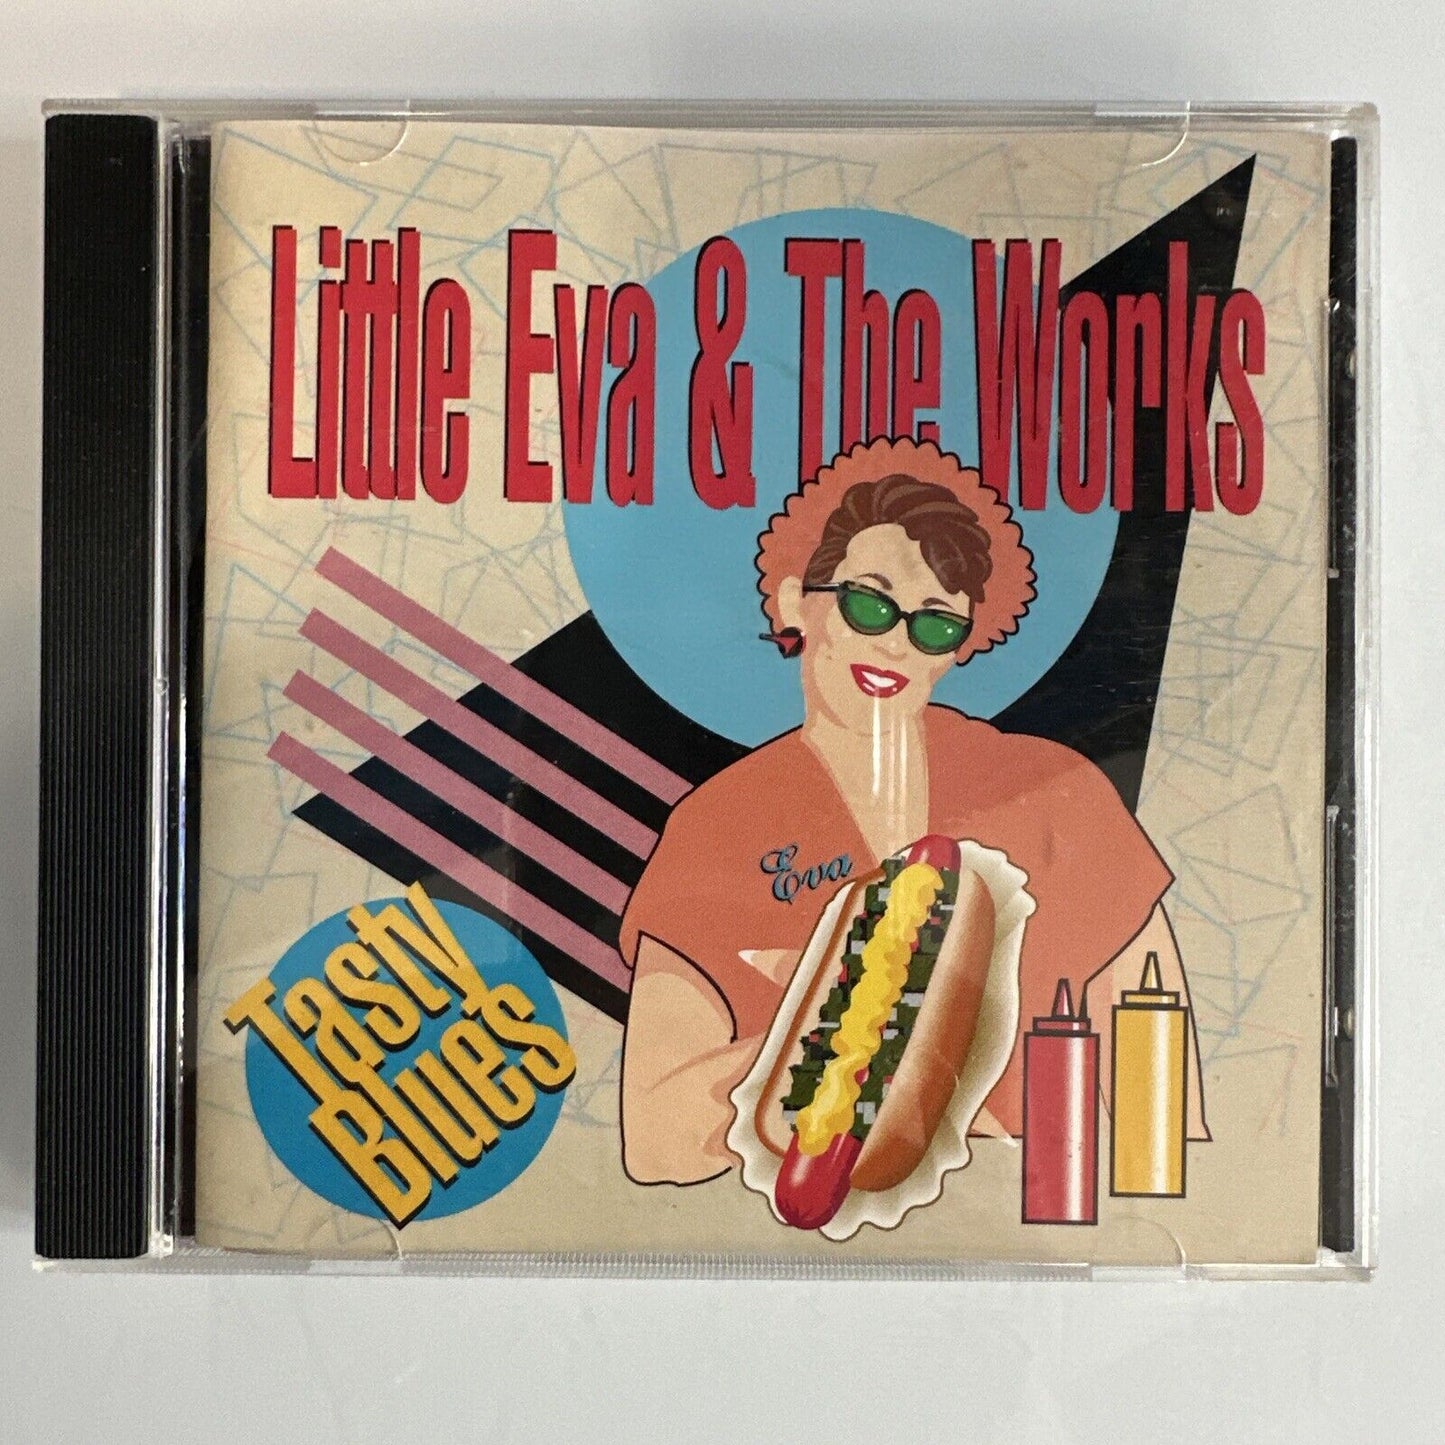 USED CD - Little Eva & The Works - Tasty Blues